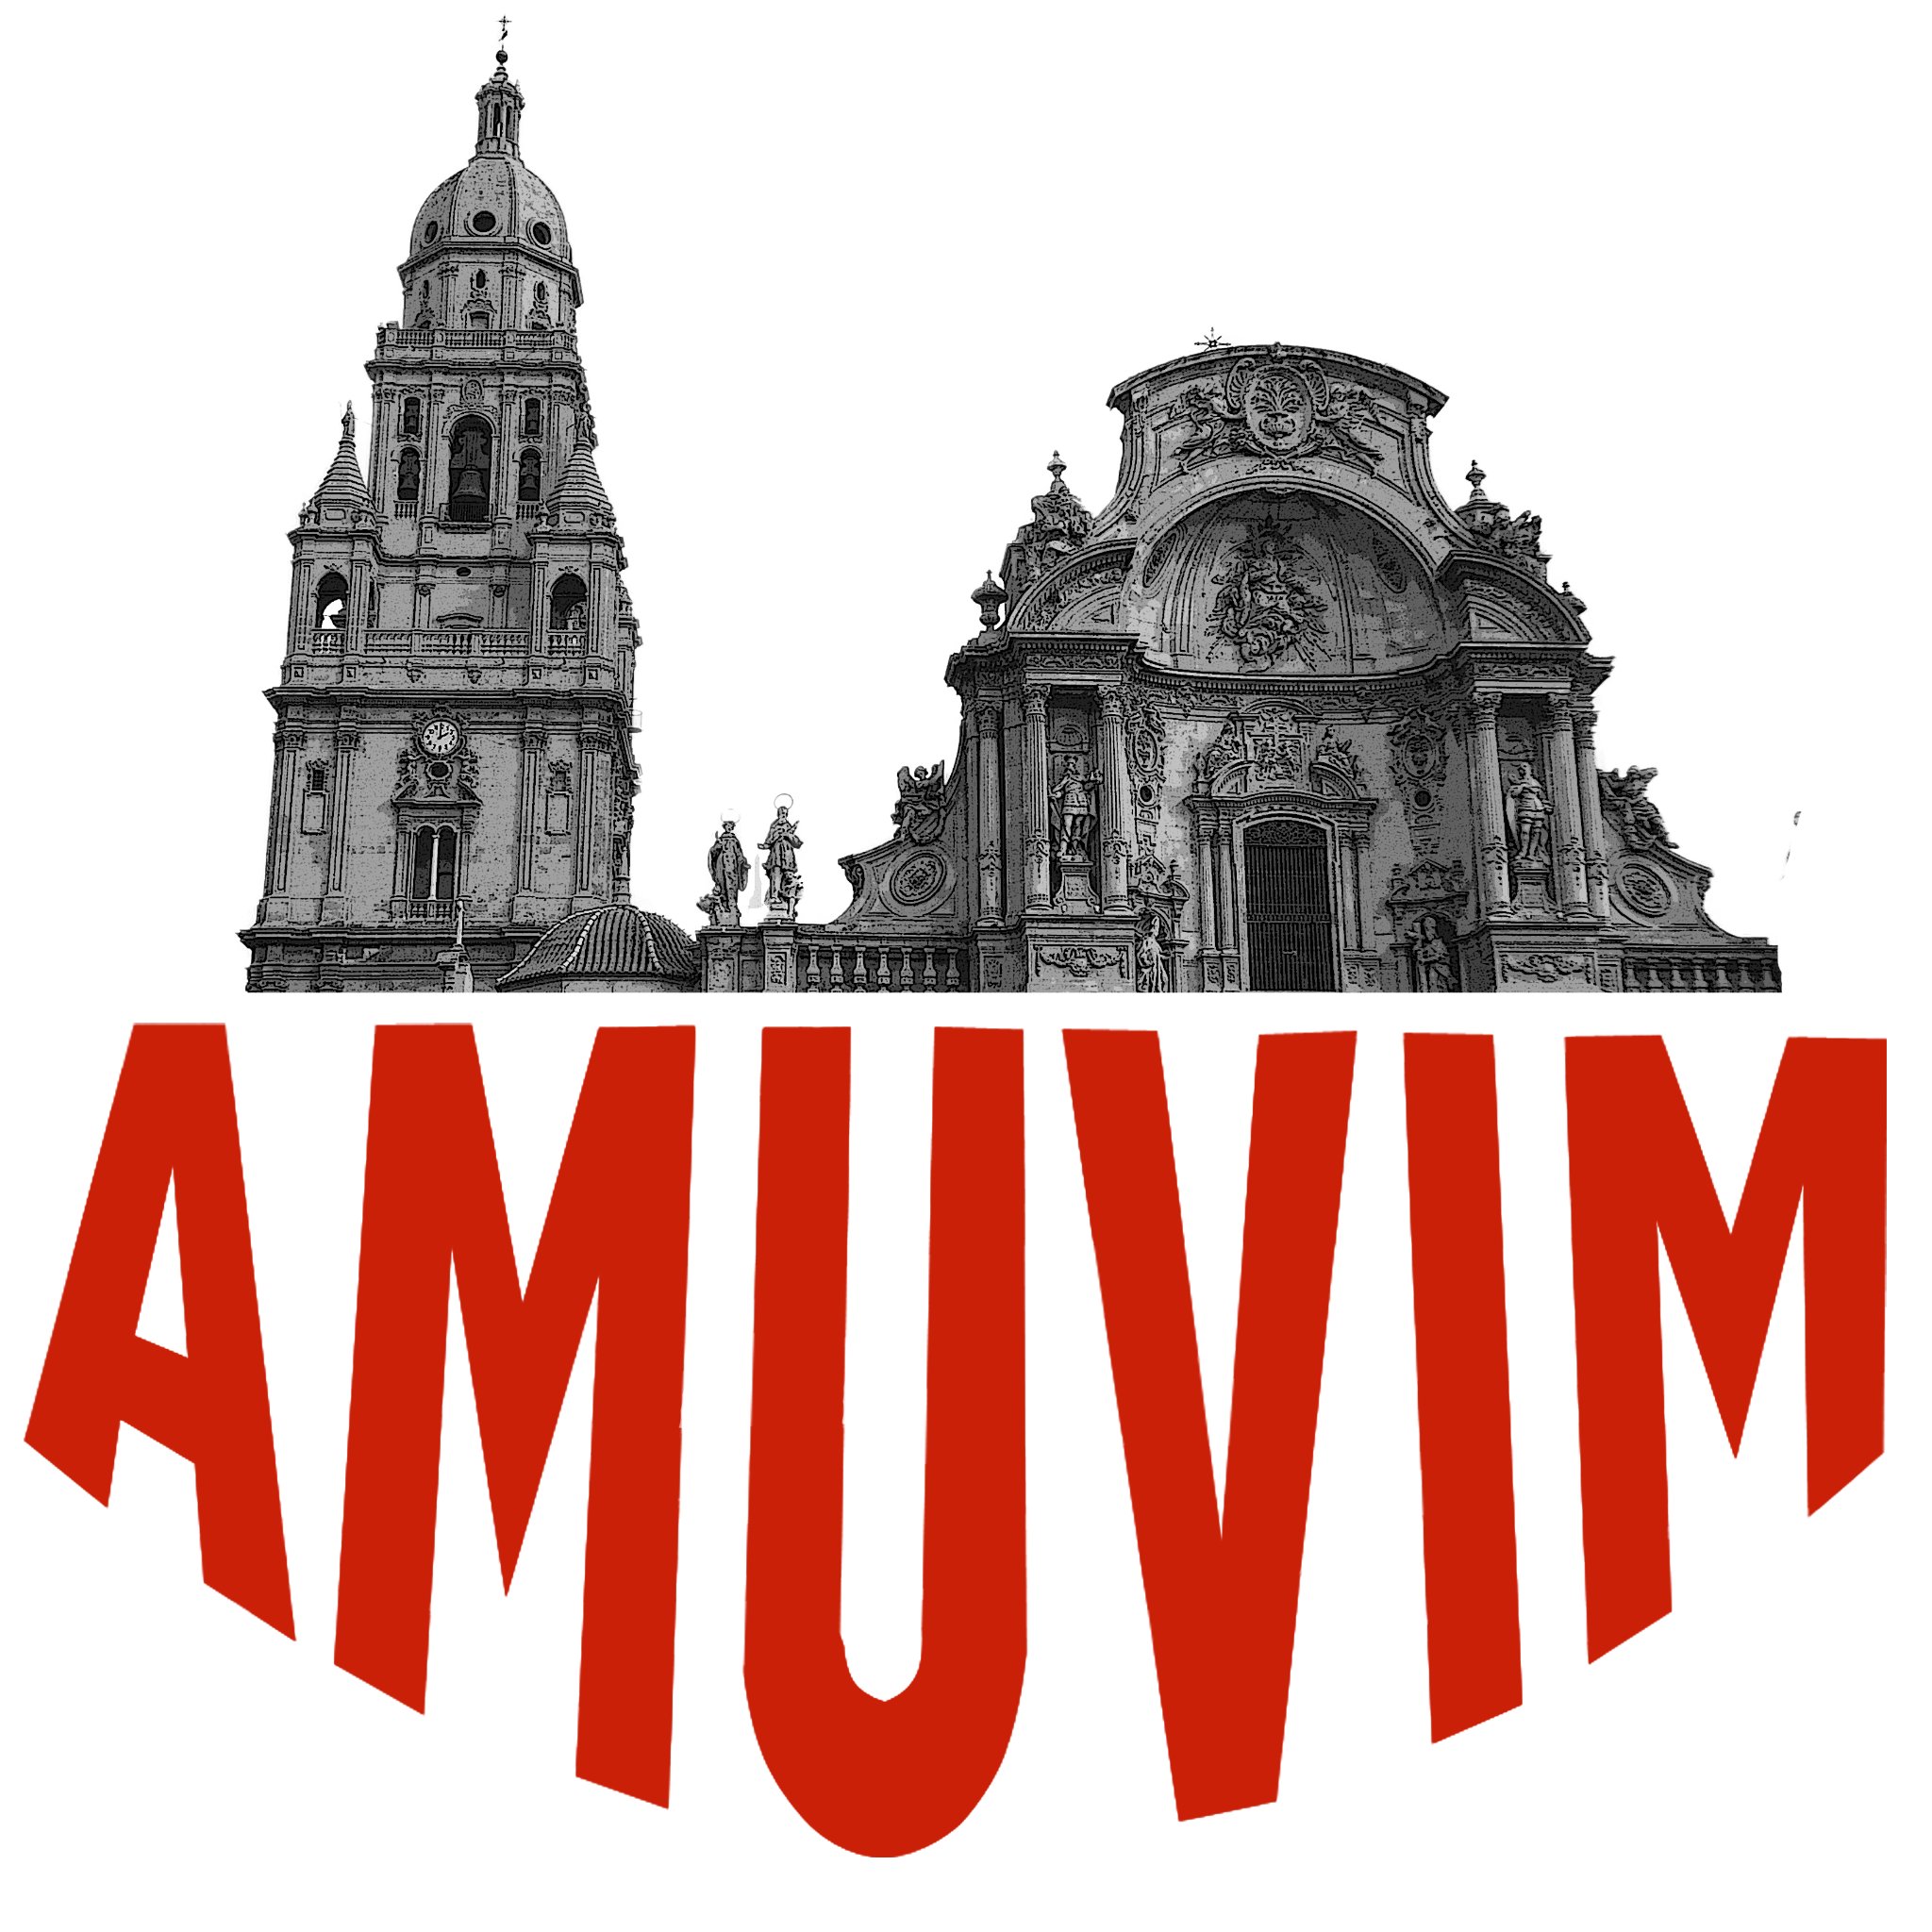 Perfil oficial de la Asociación Murciana de Voluntarios de Informática de Mayores
Desde 2006.
Tlf 679 149 129
Av. Río Segura, 6, 30002